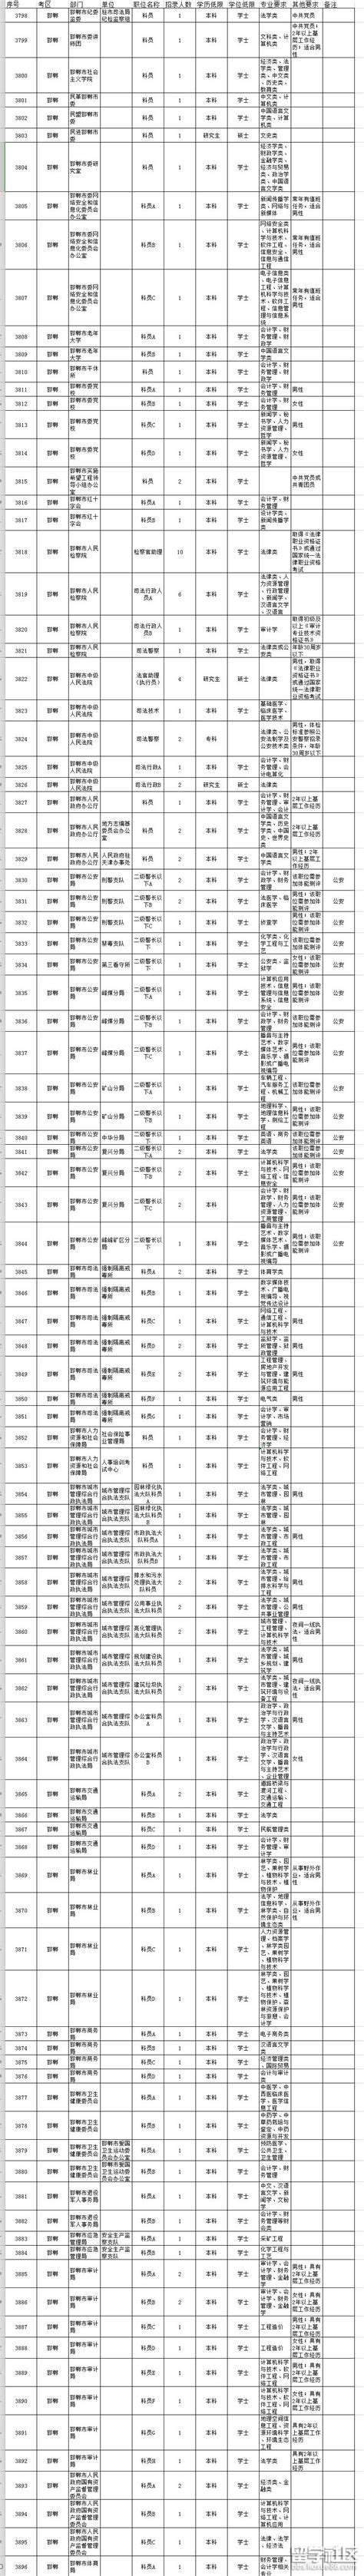 2019年河北公务员考试职位表(邯郸市)